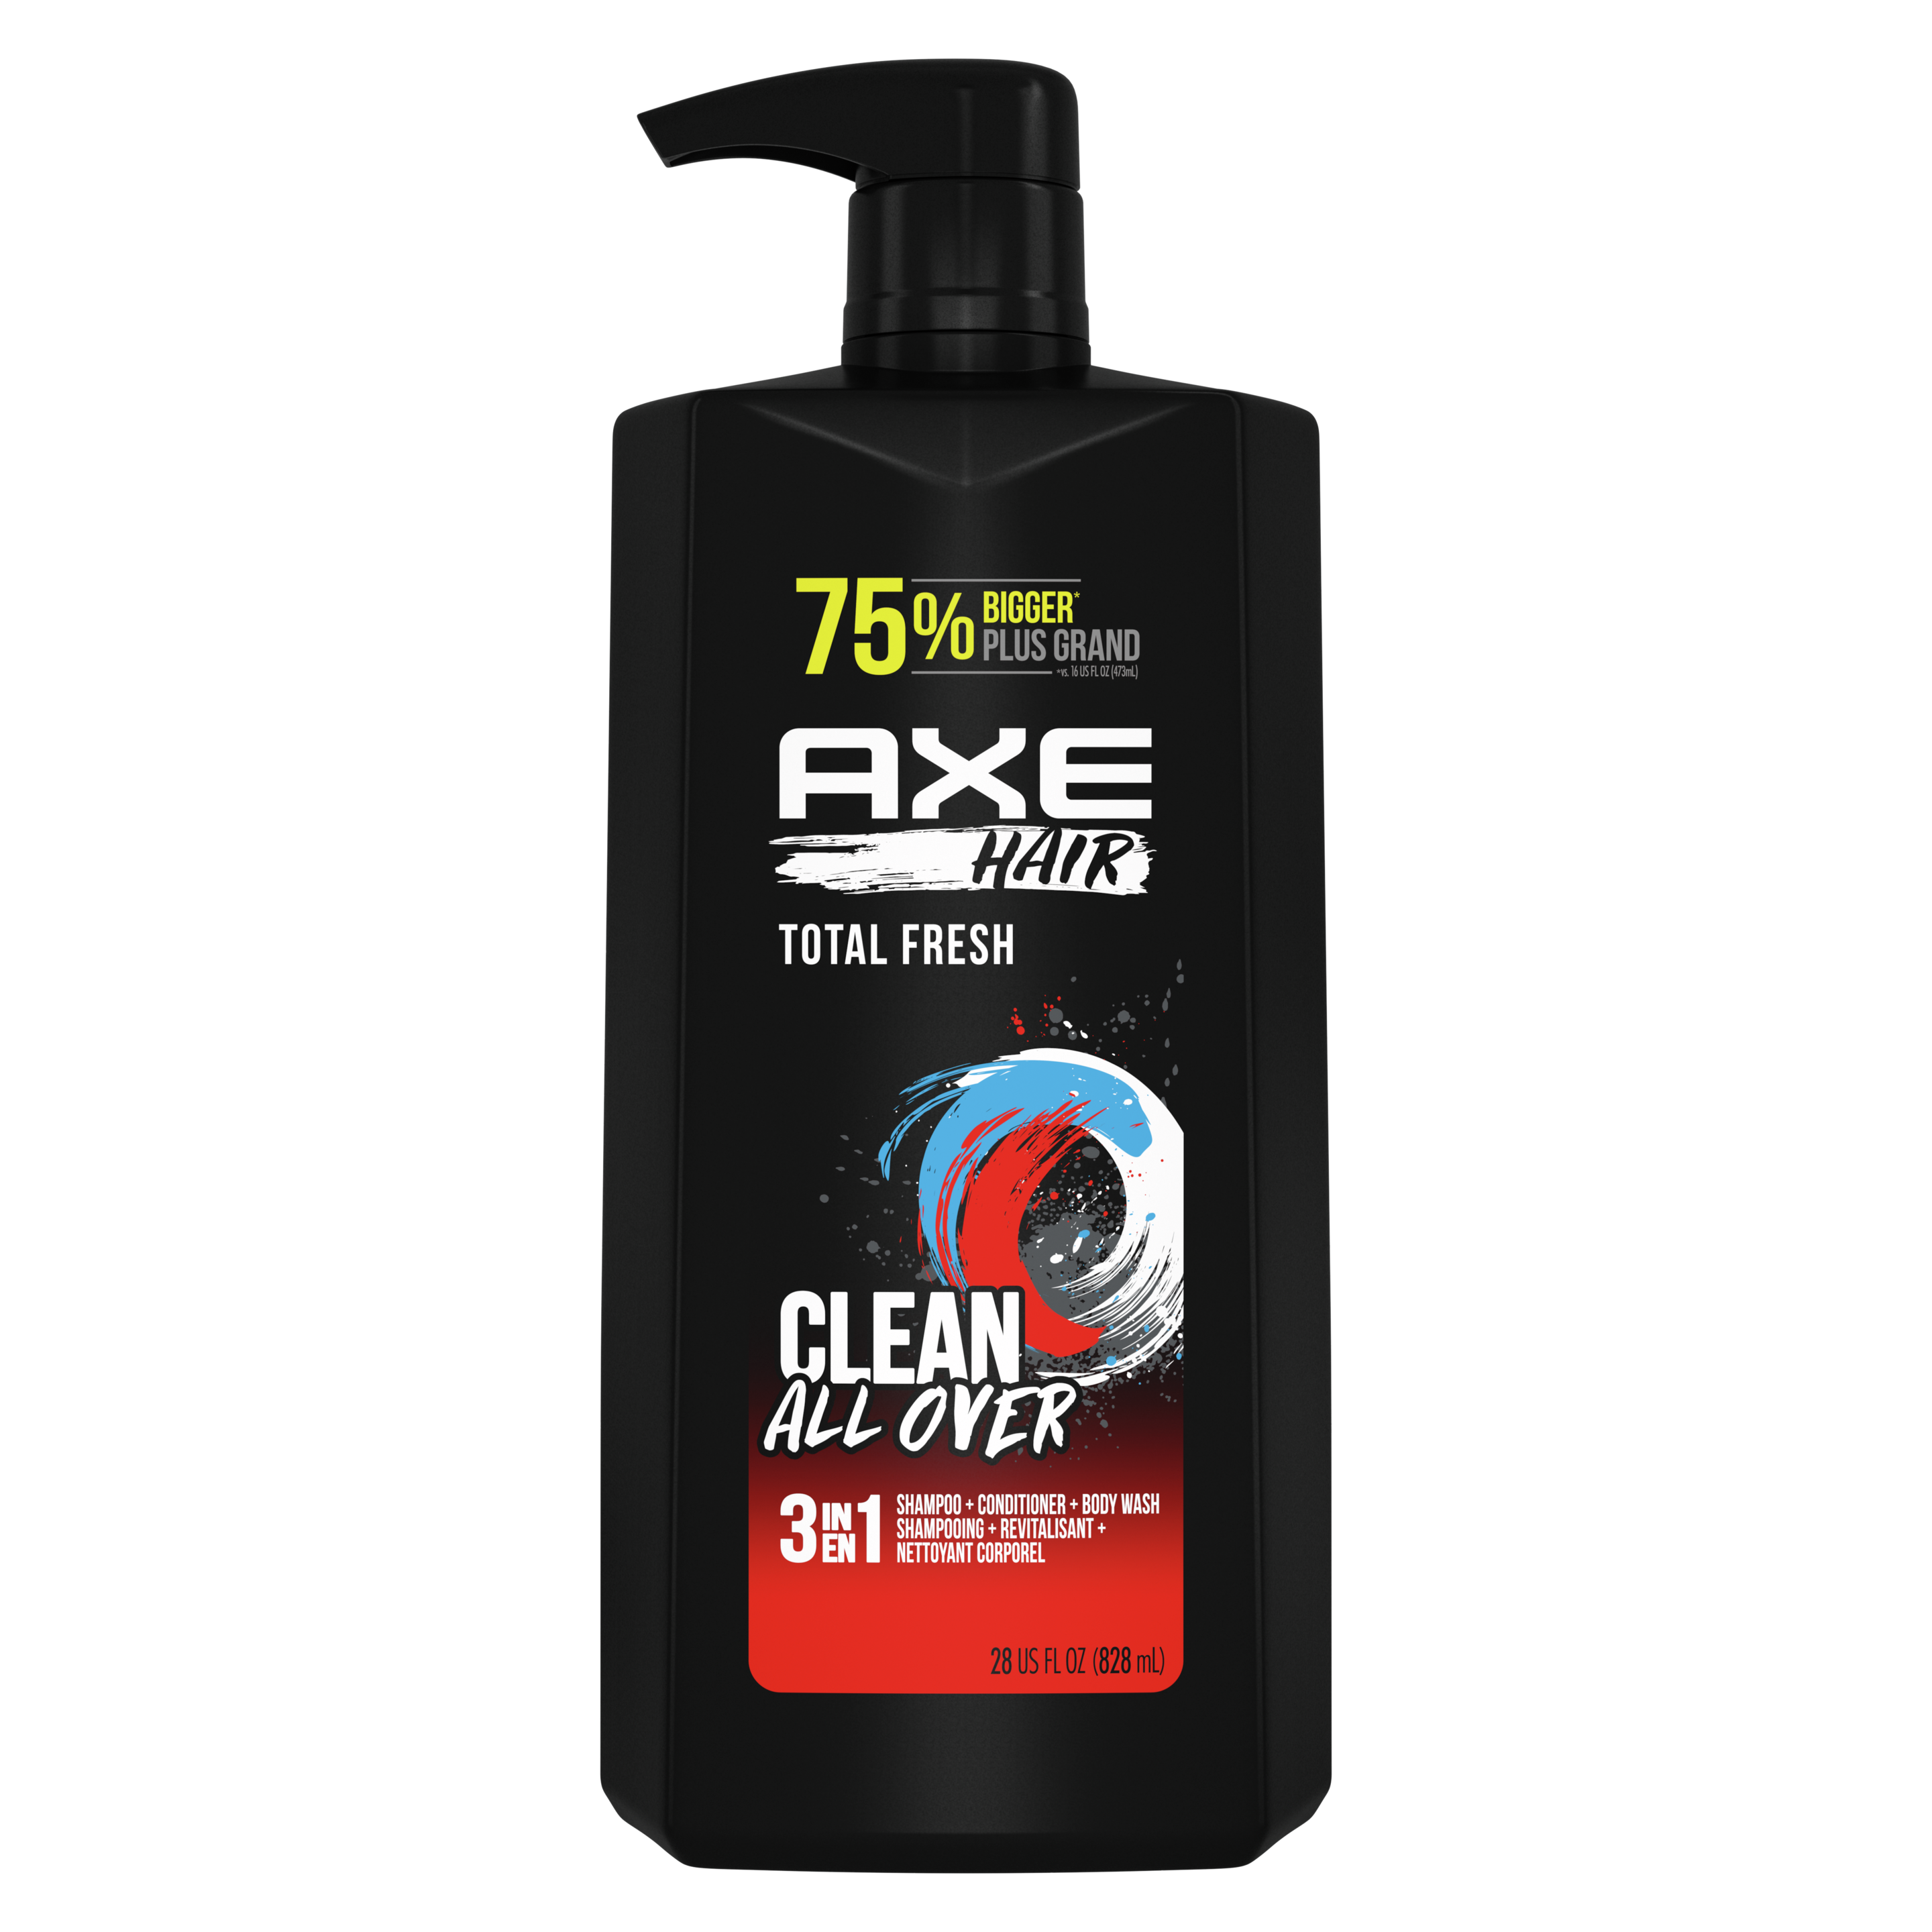 Pompe Shampooing, revitalisant et nettoyant corporel 3 en 1 AXE Hair Total Fresh